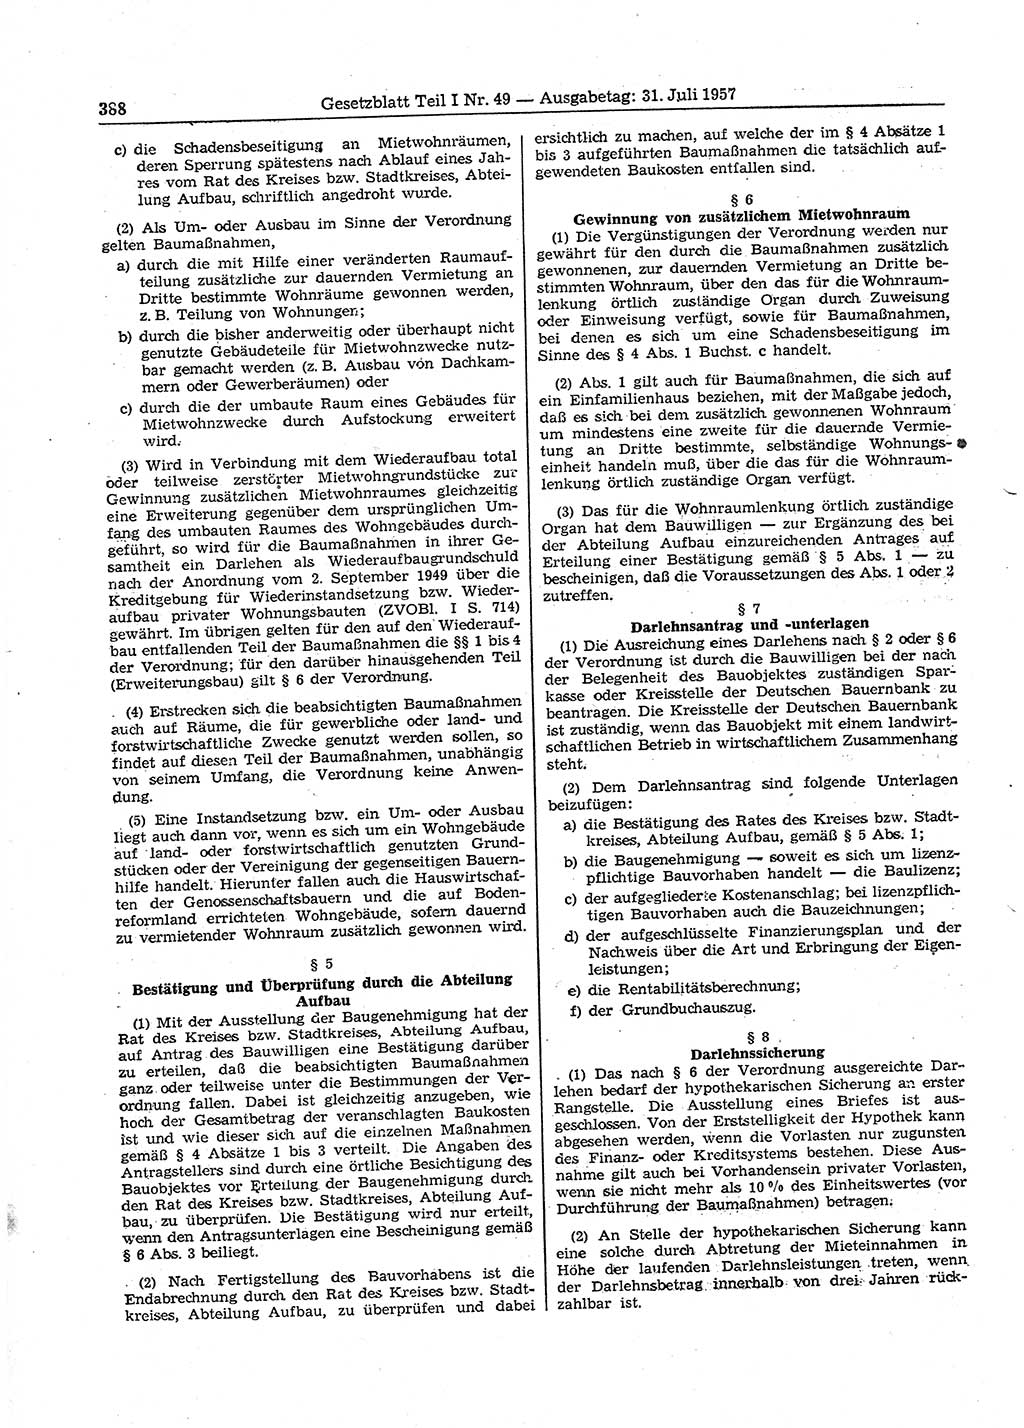 Gesetzblatt (GBl.) der Deutschen Demokratischen Republik (DDR) Teil Ⅰ 1957, Seite 388 (GBl. DDR Ⅰ 1957, S. 388)